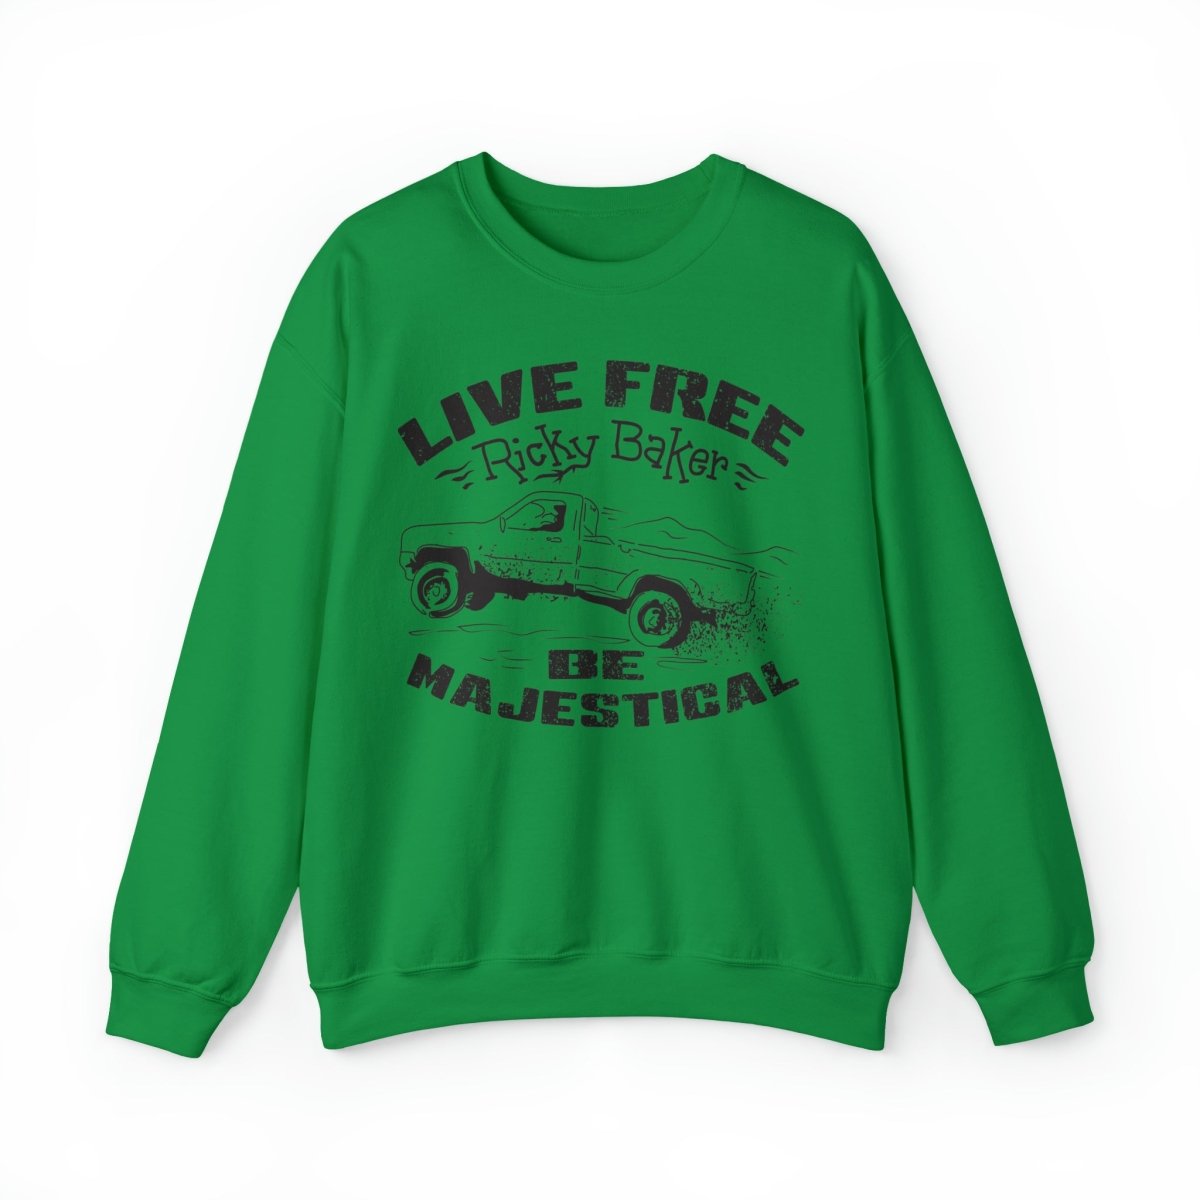 Live Free Ricky Baker Fleece Sweatshirt, Majestical, New Zealand, Outlaw, Master Bushman, Teen